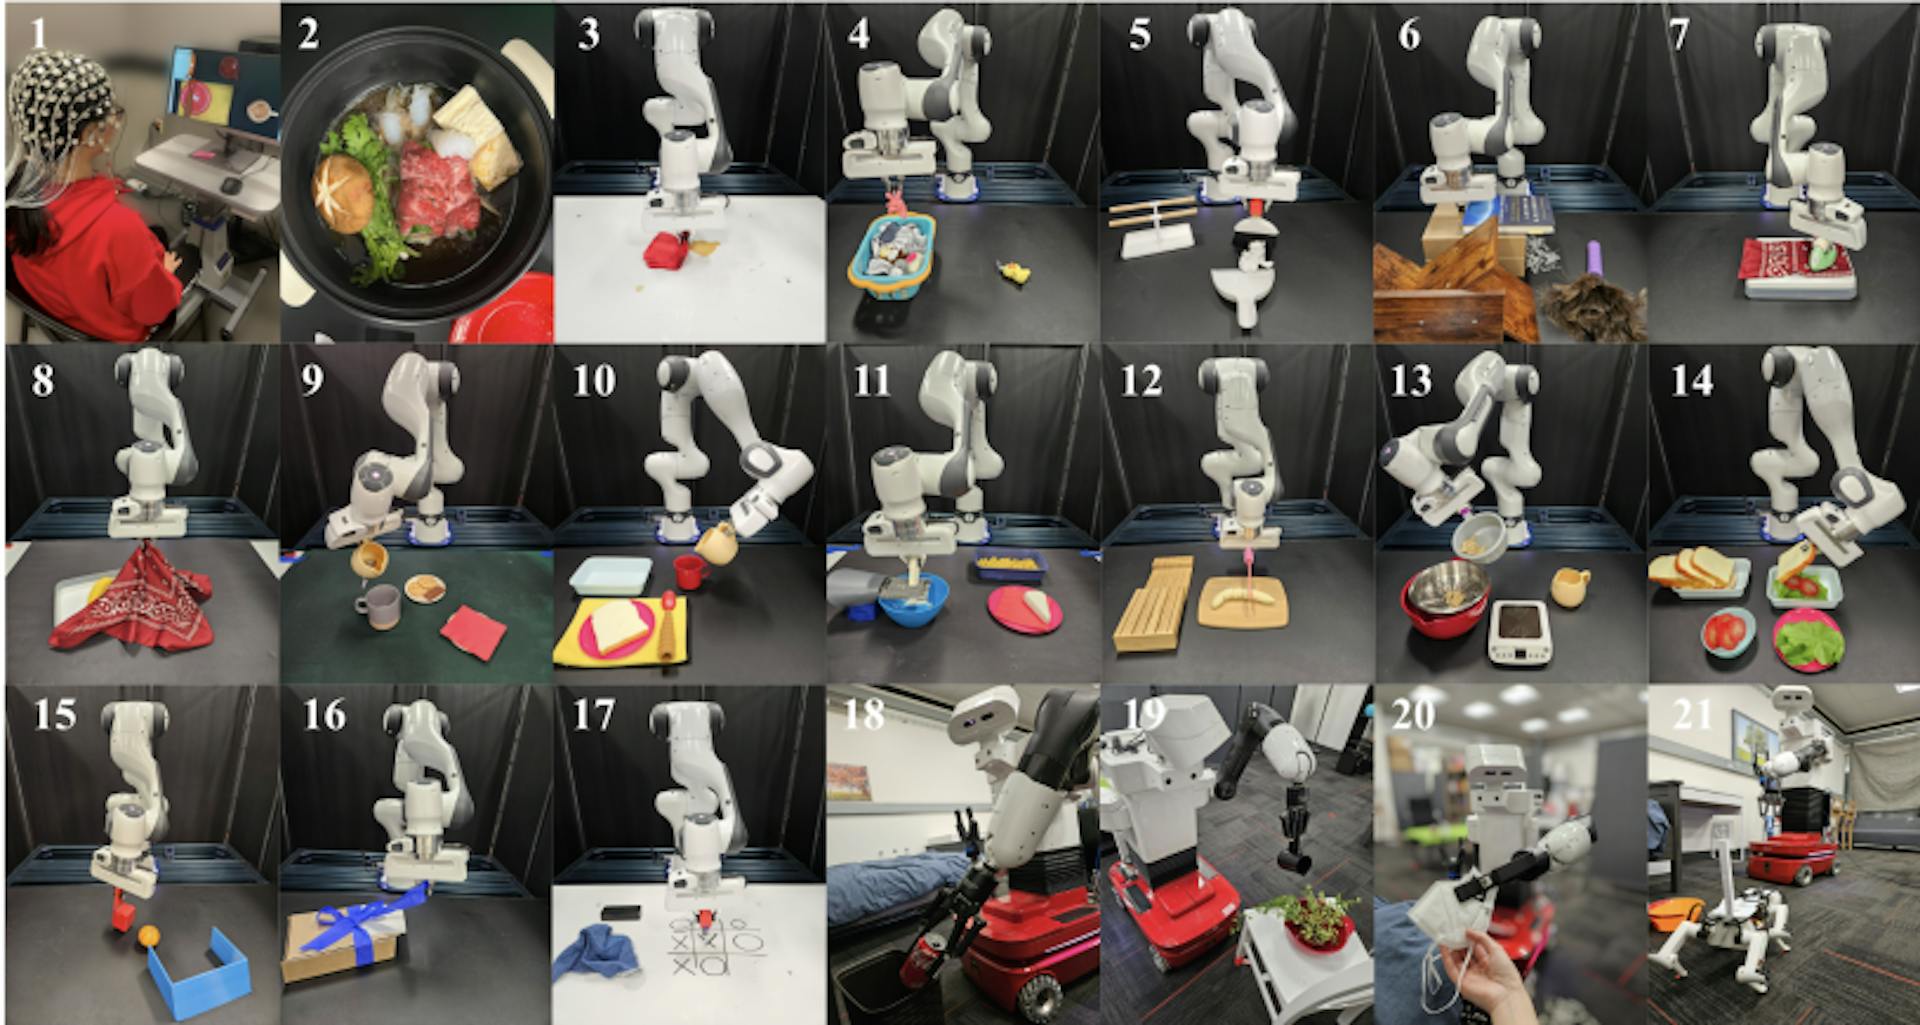 Abbildung 1: NOIR ist eine universelle Gehirn-Roboter-Schnittstelle, die es Menschen ermöglicht, ihre Gehirnsignale (1) zu nutzen, um Roboter für die Ausführung alltäglicher Aktivitäten zu steuern, wie zum Beispiel Sukiyaki herstellen (2), Kleidung bügeln (7) oder Tic-Tac spielen -Toe mit Freunden (17) und einen Roboterhund streicheln (21).